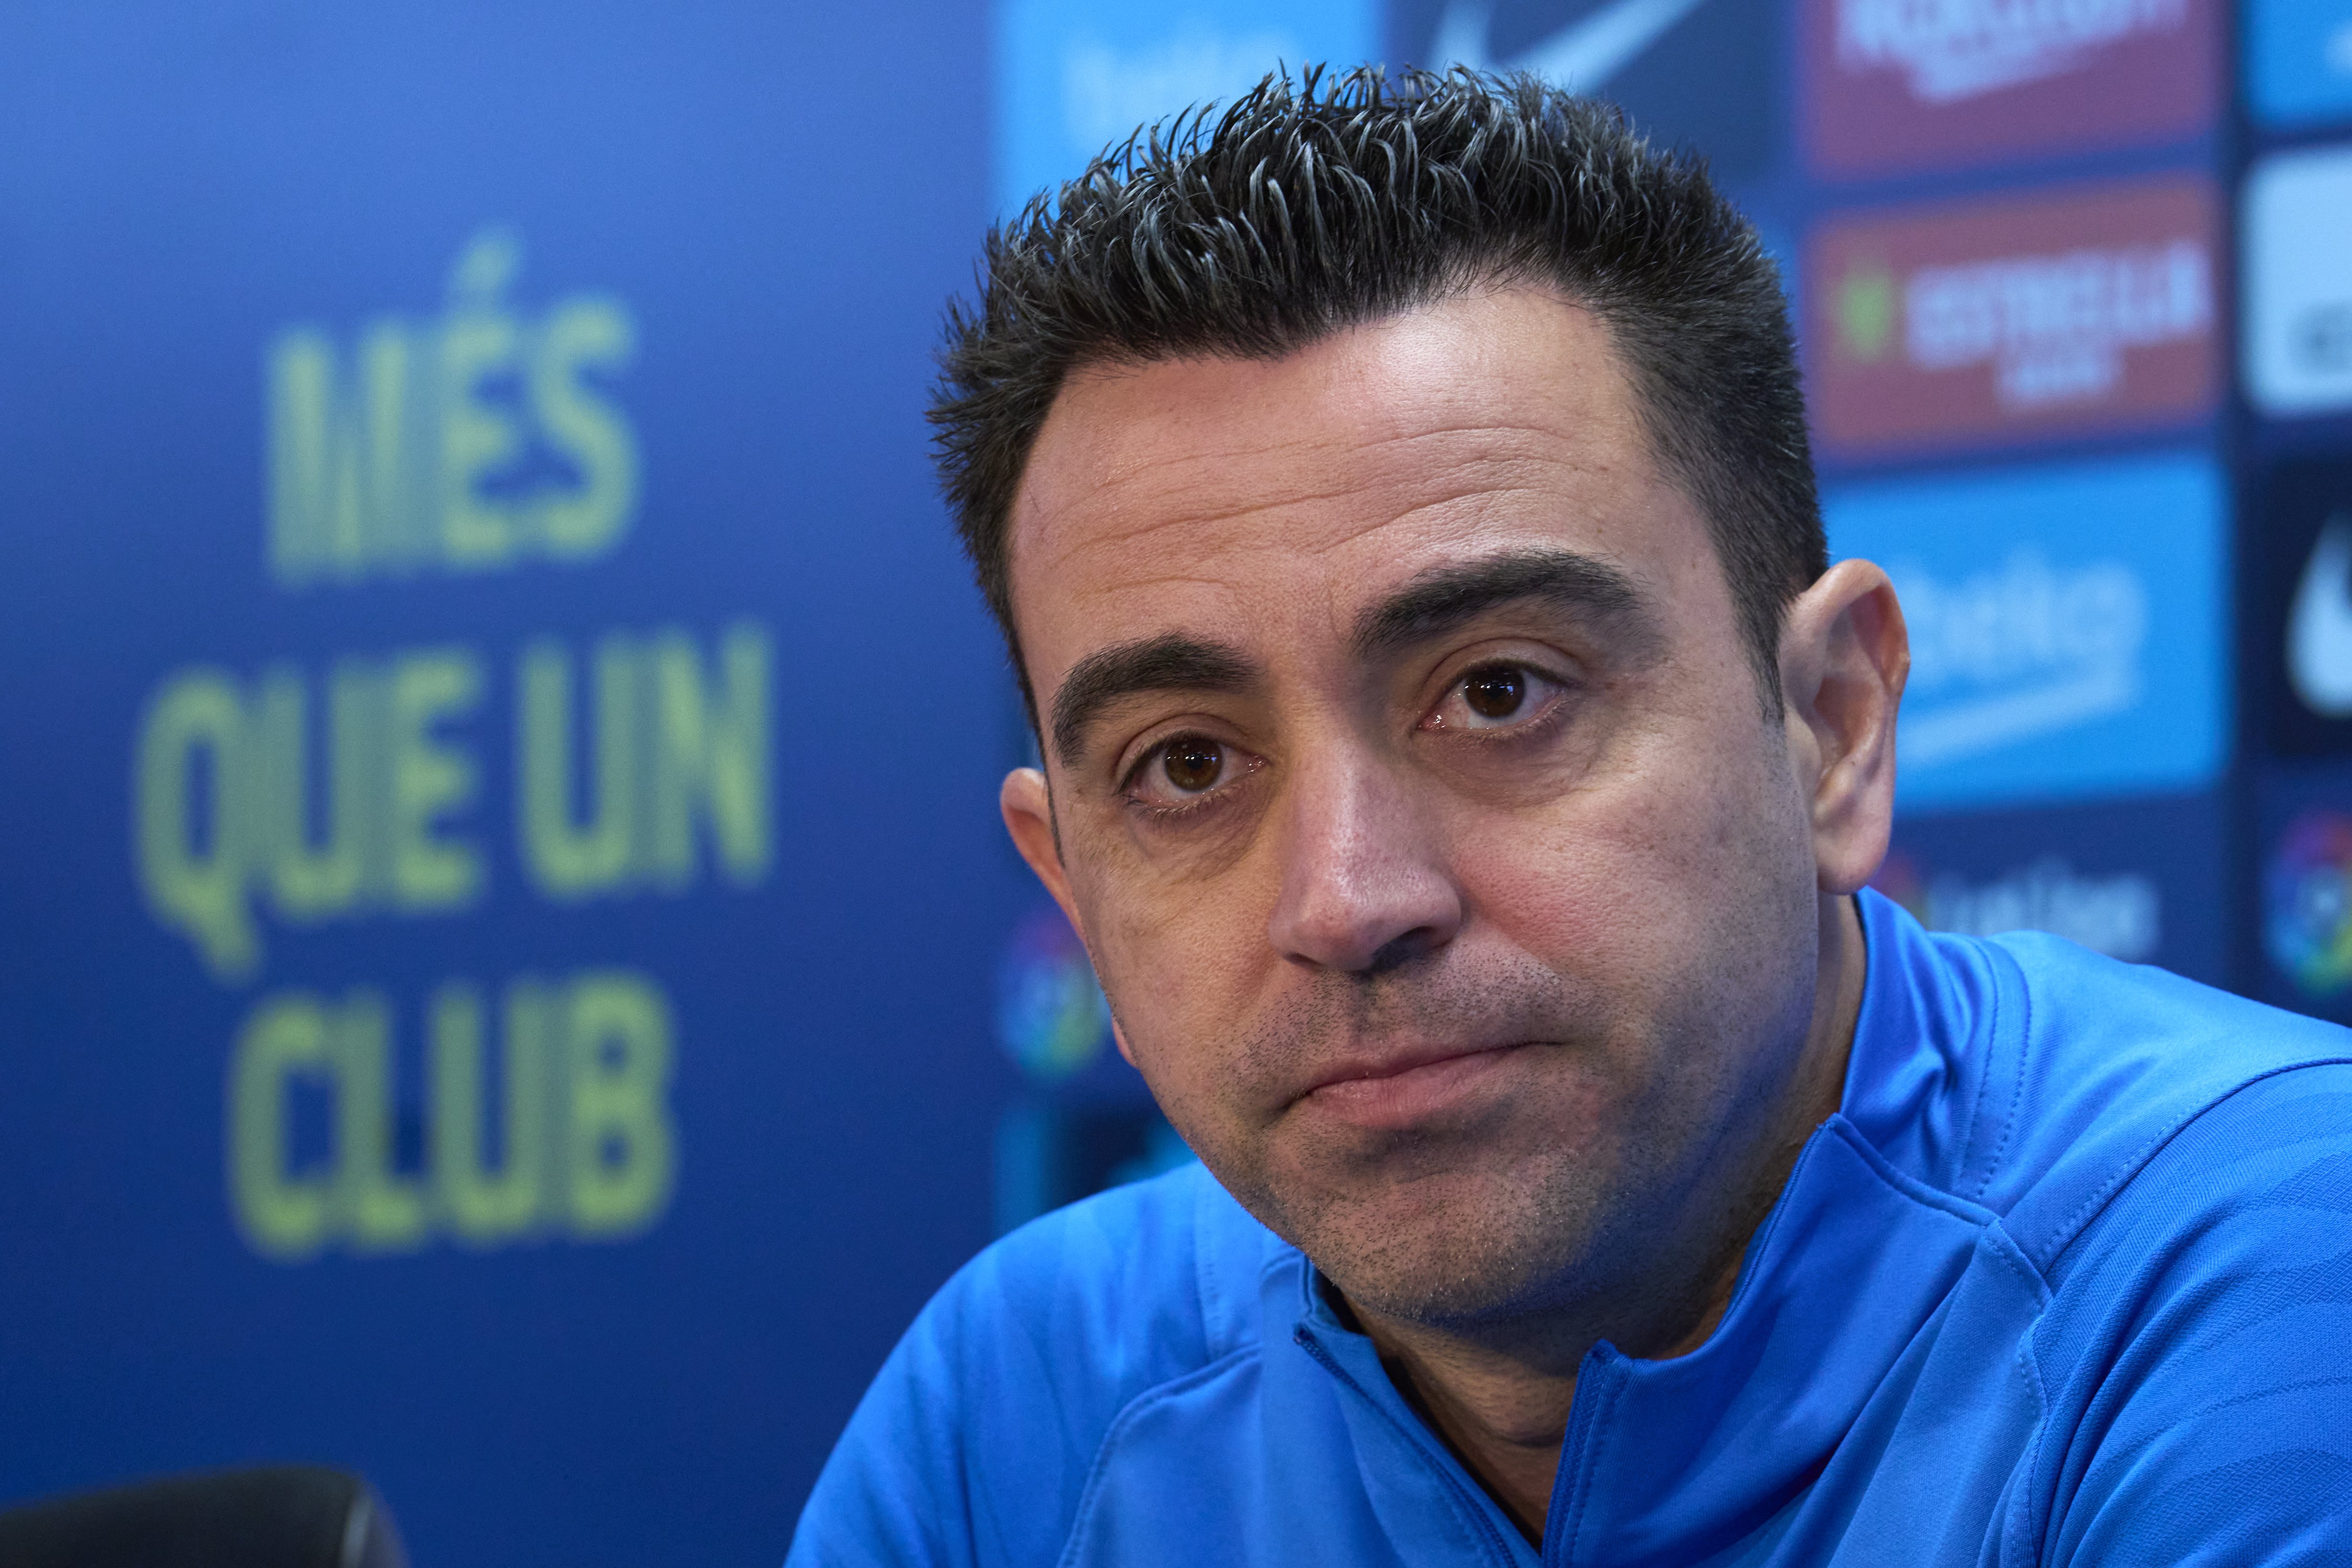 No serà castigat, pero Xavi Hernández li demana que acabi amb aquesta situació pel bé del Barça